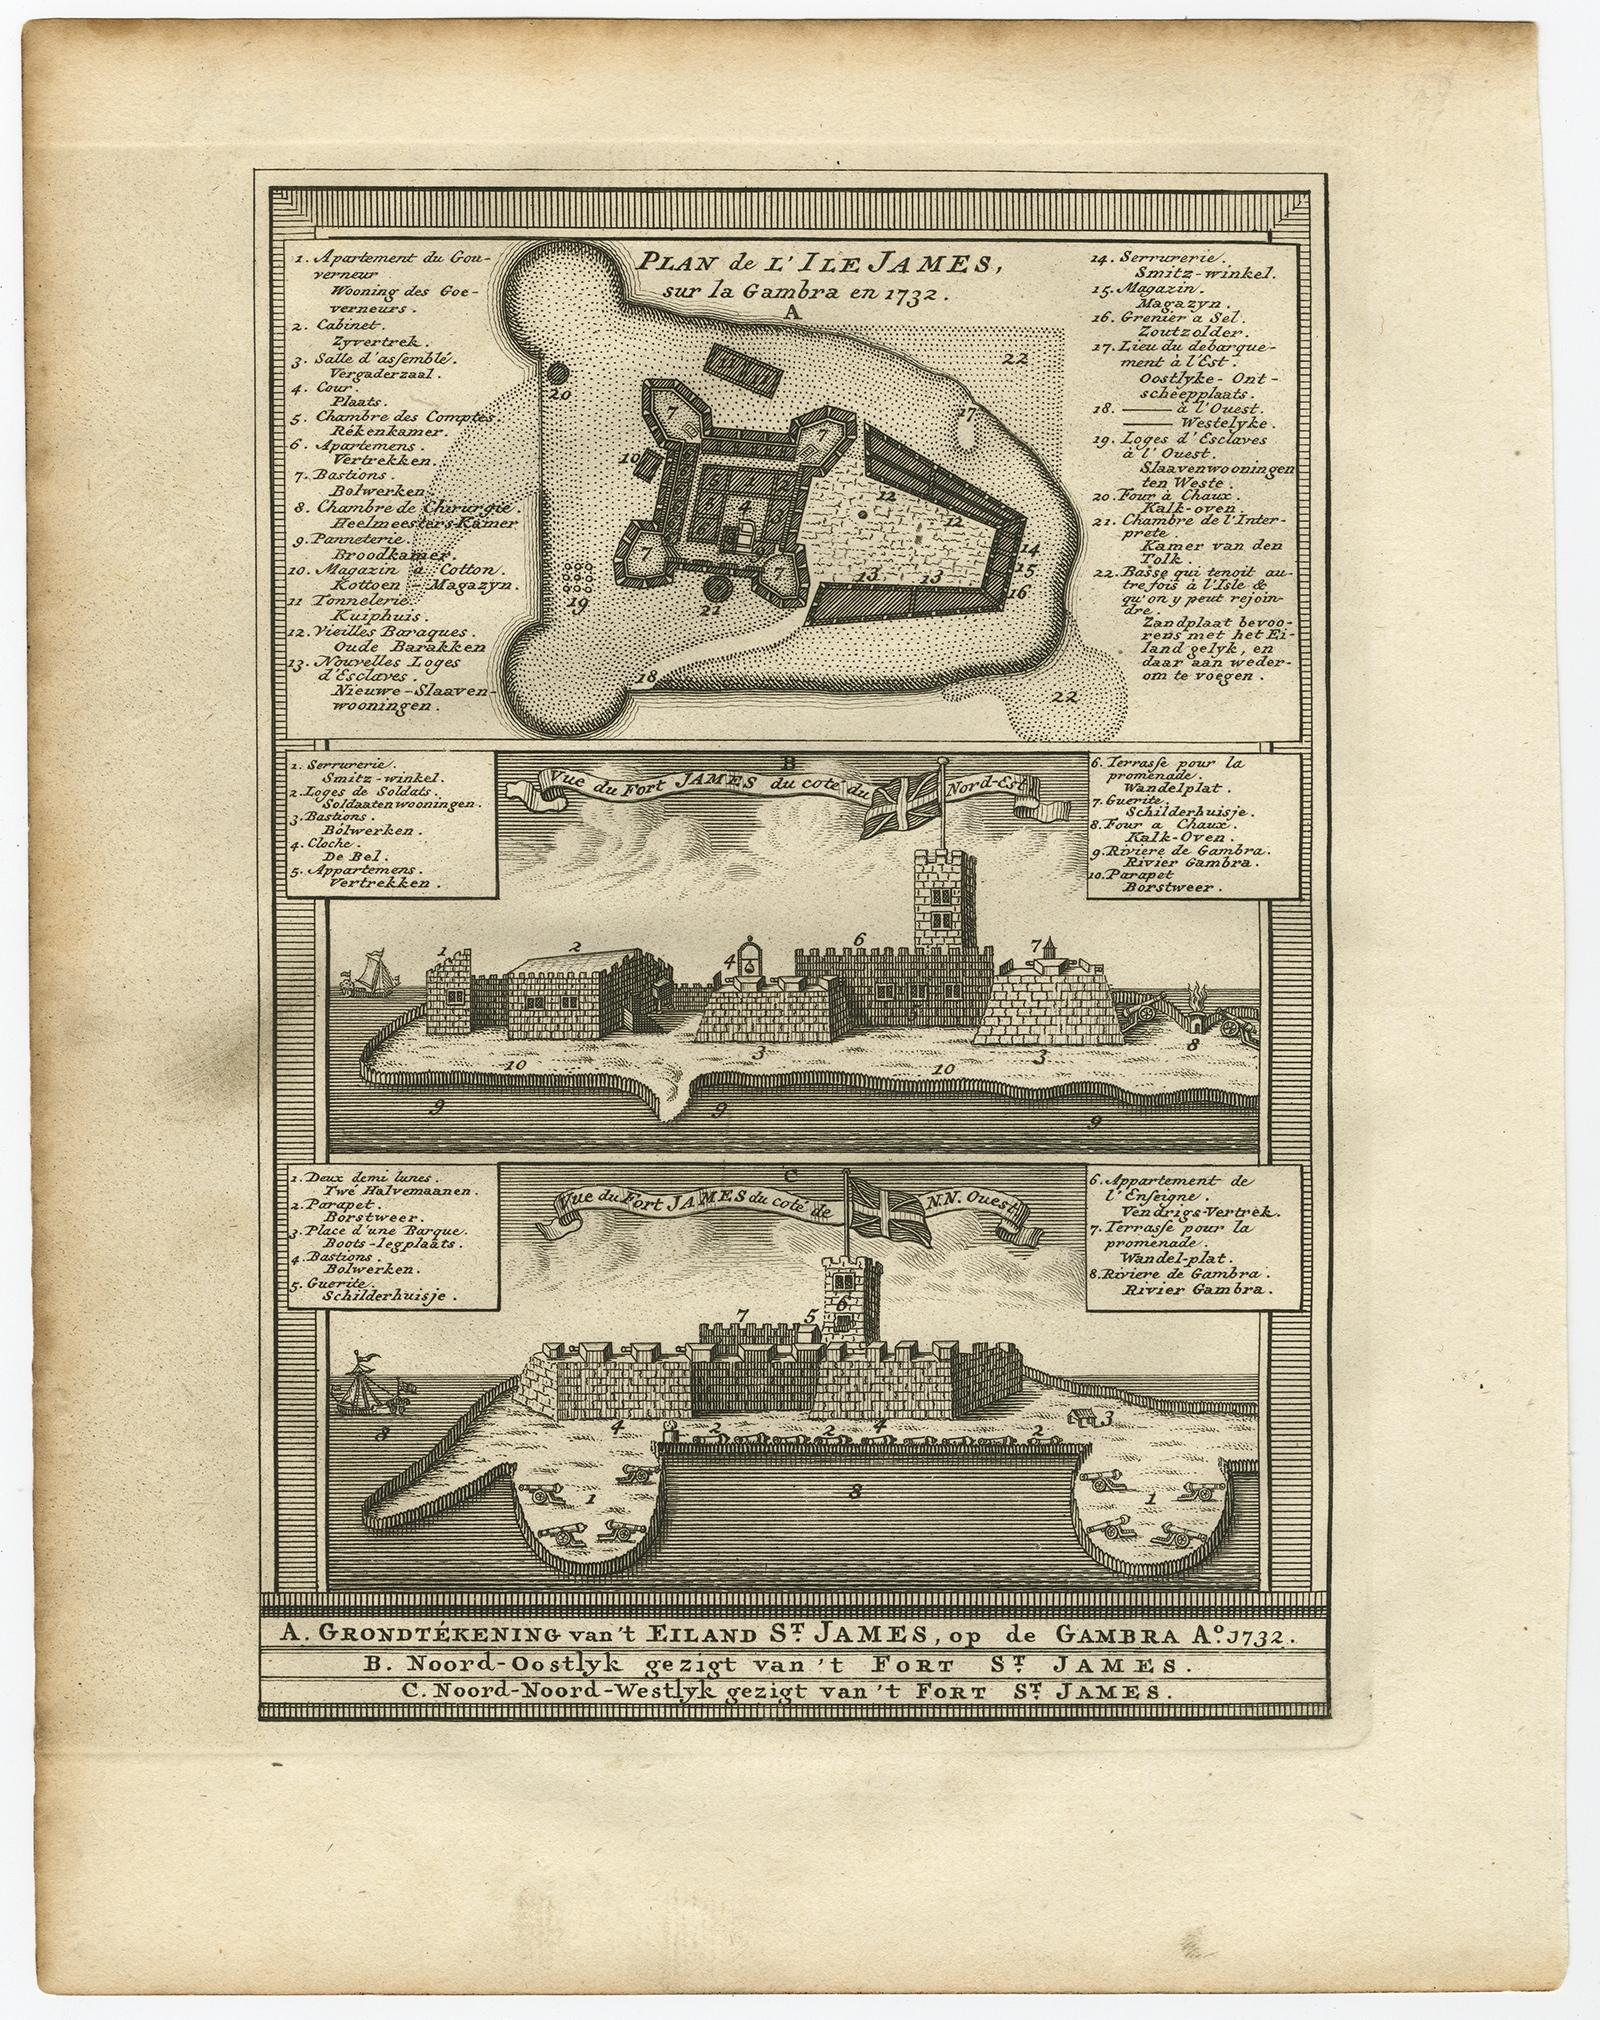 Plan de l'Isle James sur la Gambra en 1732 (...).

Gravure sur cuivre/gravure sur papier vergé à la main.
Taille de la feuille : 19,7 x 26,7 cm. Taille de l'image : 13,8 x 19,8 cm.

Extrait du vol. 3 d'une édition néerlandaise de l'ouvrage